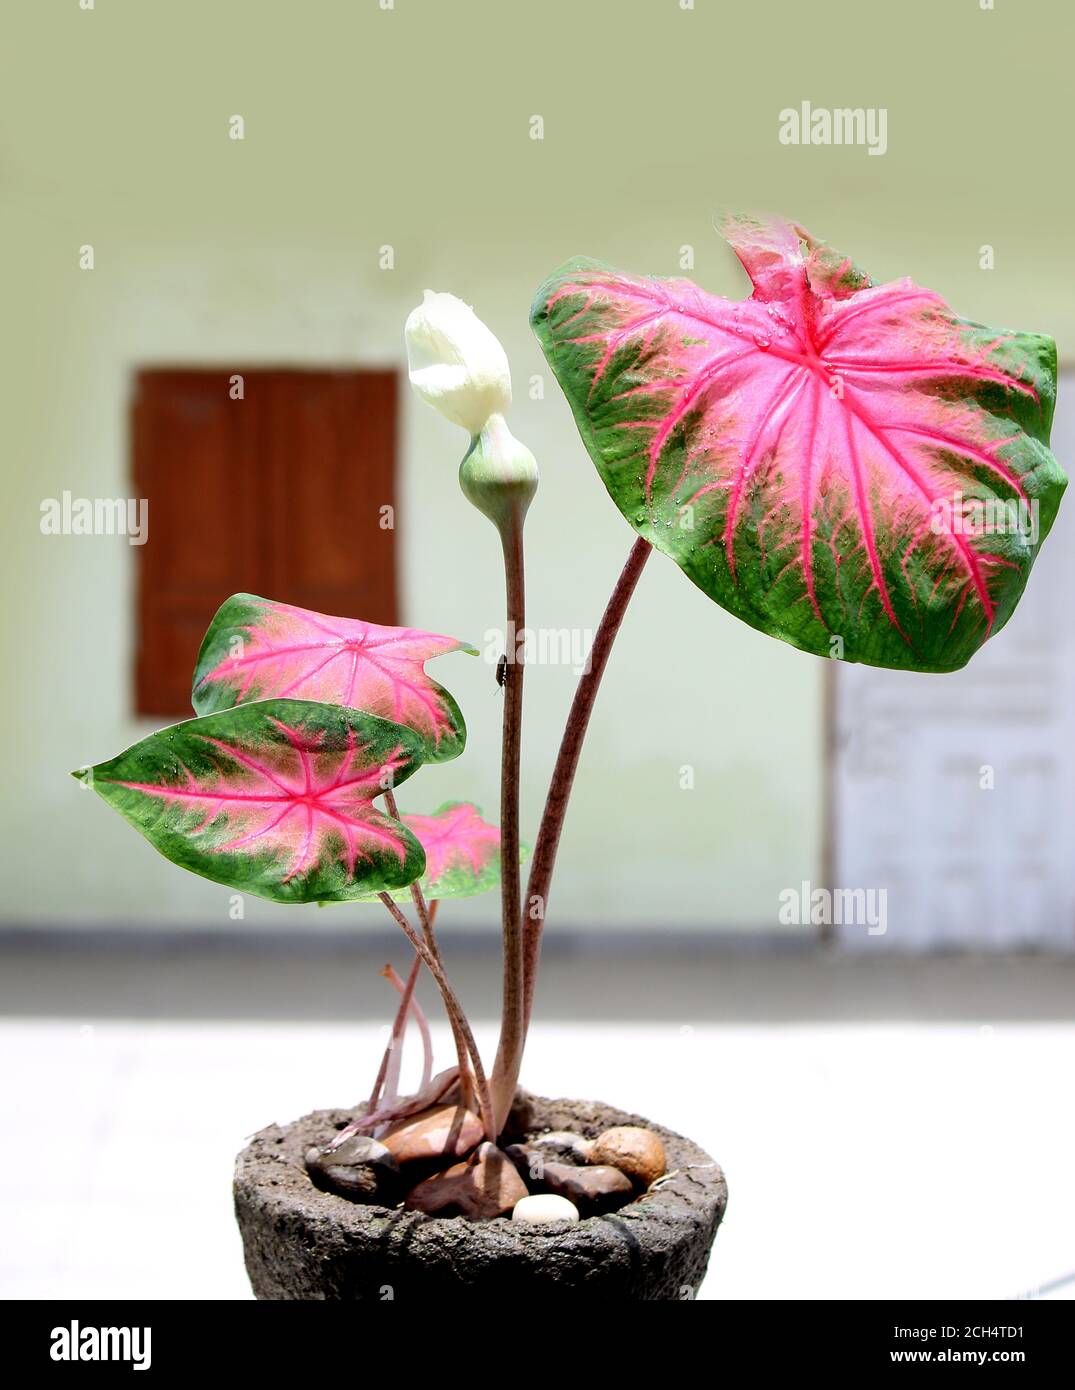 Caladium bicolore avec des feuilles roses et des veines vertes (Florida Sweetheart), des feuilles ornementales colorées des ailes d'ange ou du coeur de Jésus et de l'oreille d'éléphant, b Banque D'Images